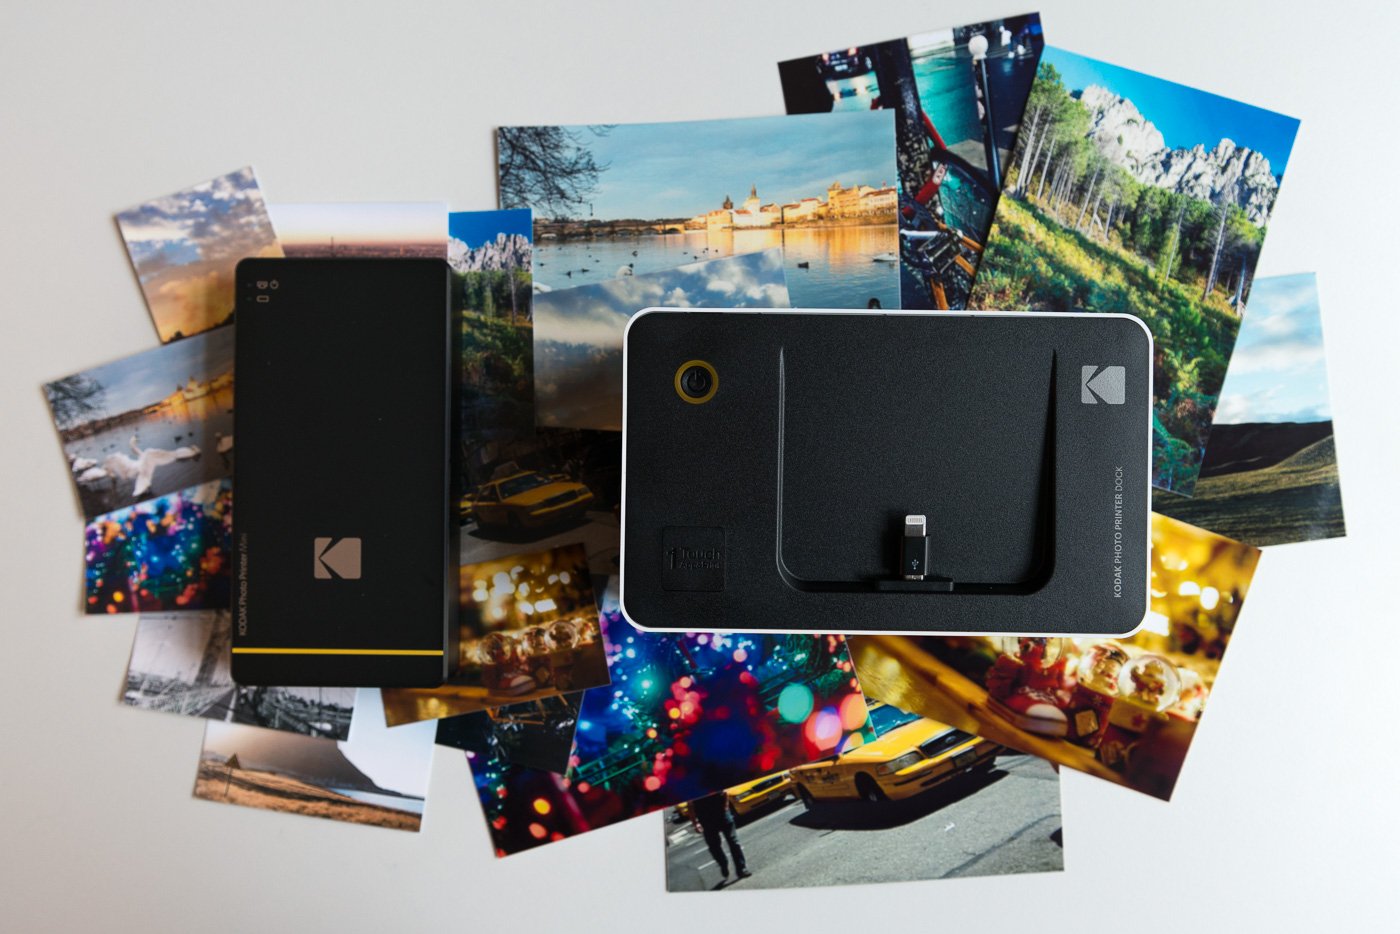 Polaroid ZIP : une imprimante portable à prendre partout avec vous